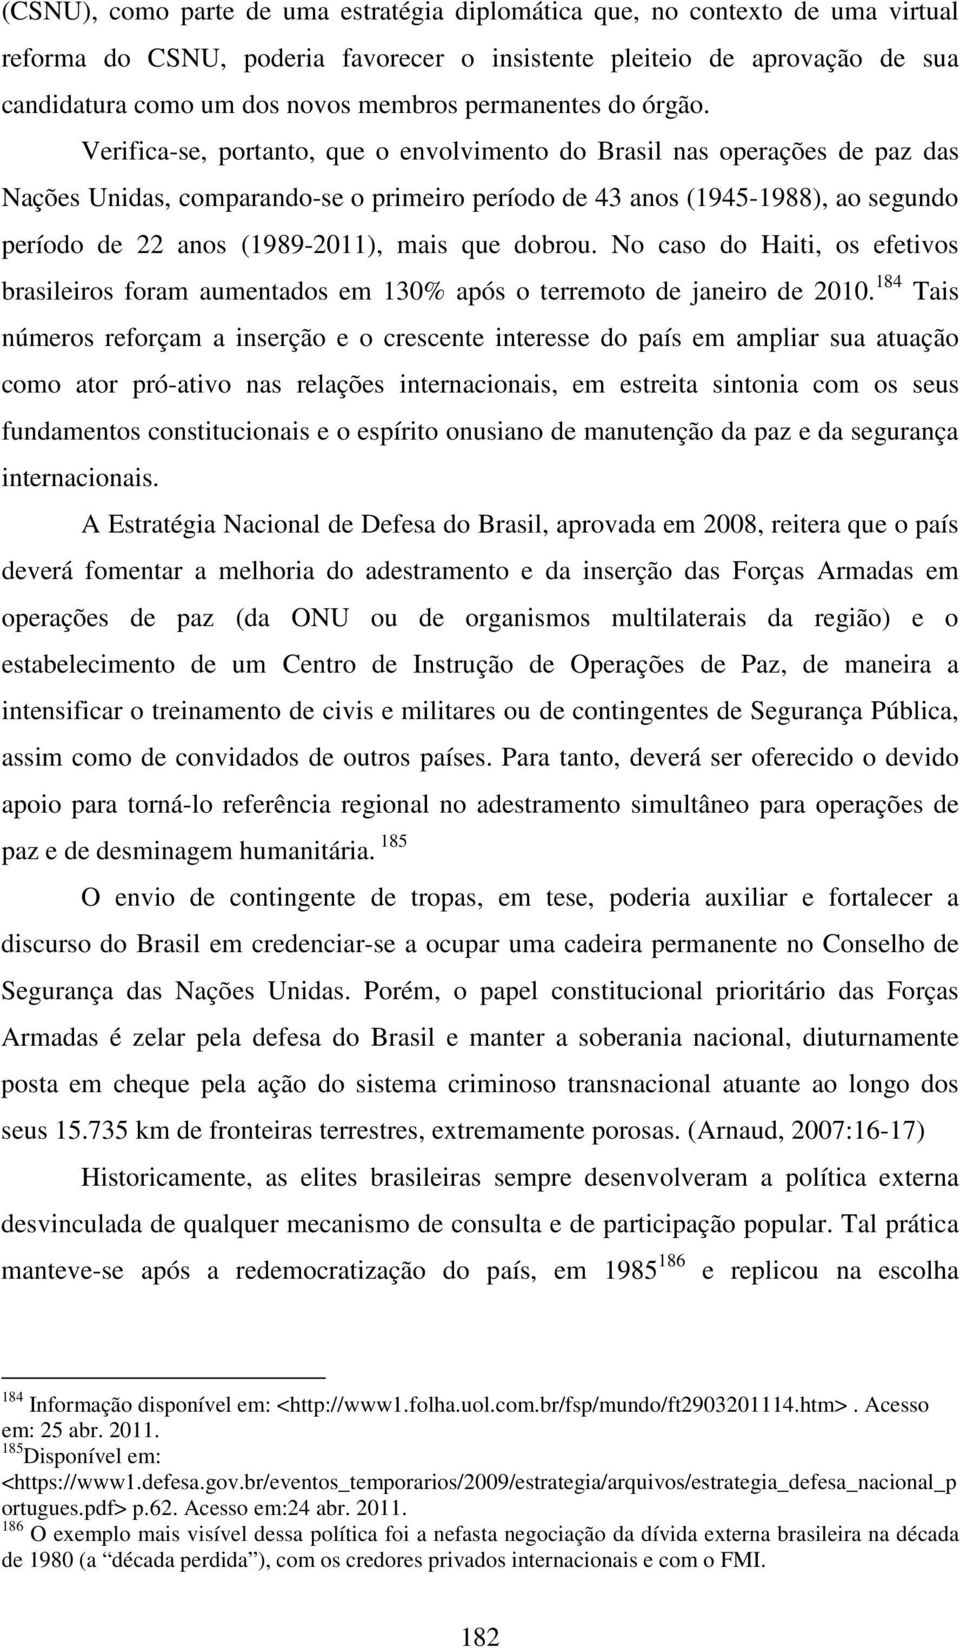 Verifica-se, portanto, que o envolvimento do Brasil nas operações de paz das Nações Unidas, comparando-se o primeiro período de 43 anos (1945-1988), ao segundo período de 22 anos (1989-2011), mais